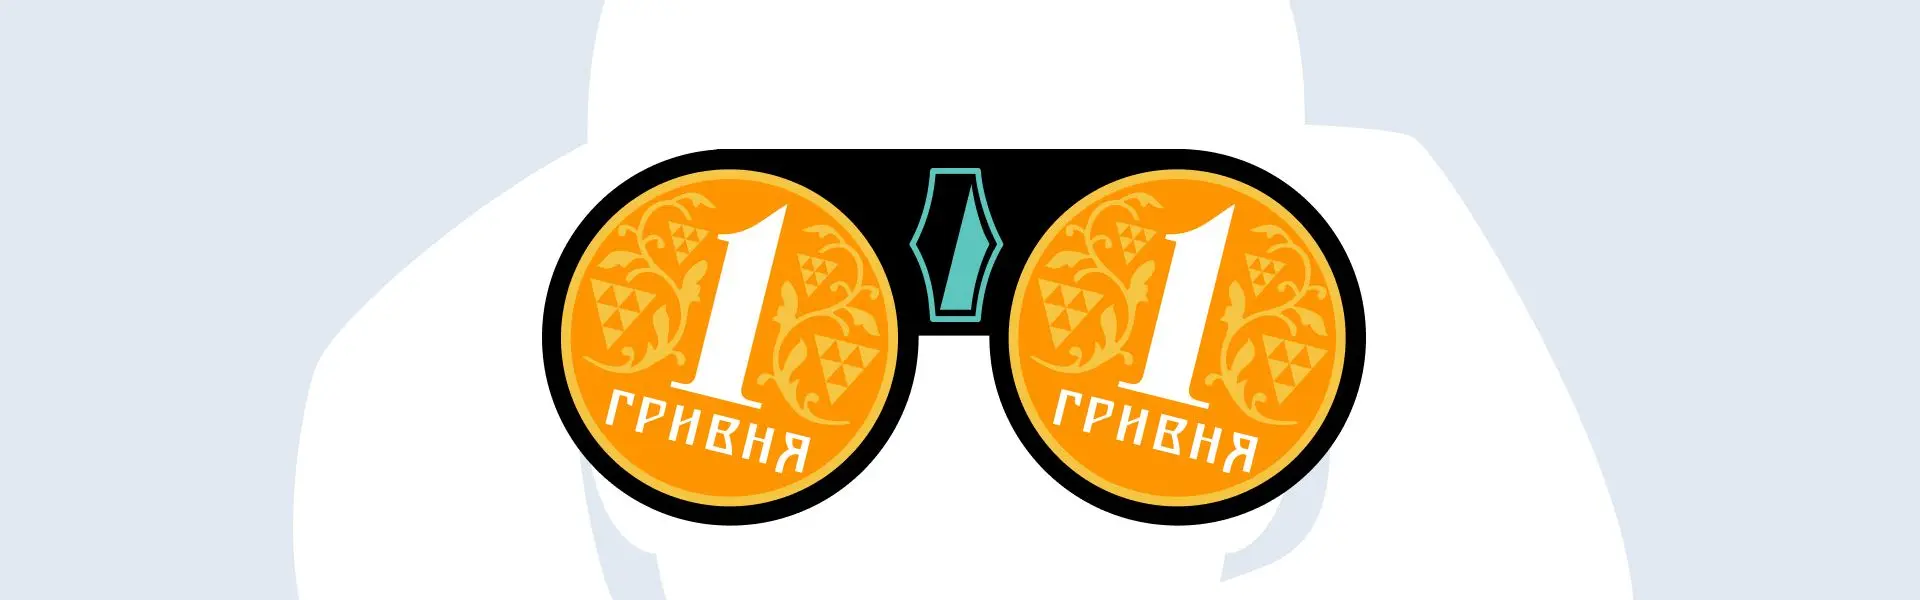 У Національному банку України уточнили свої плани щодо запровадження електронної гривні.